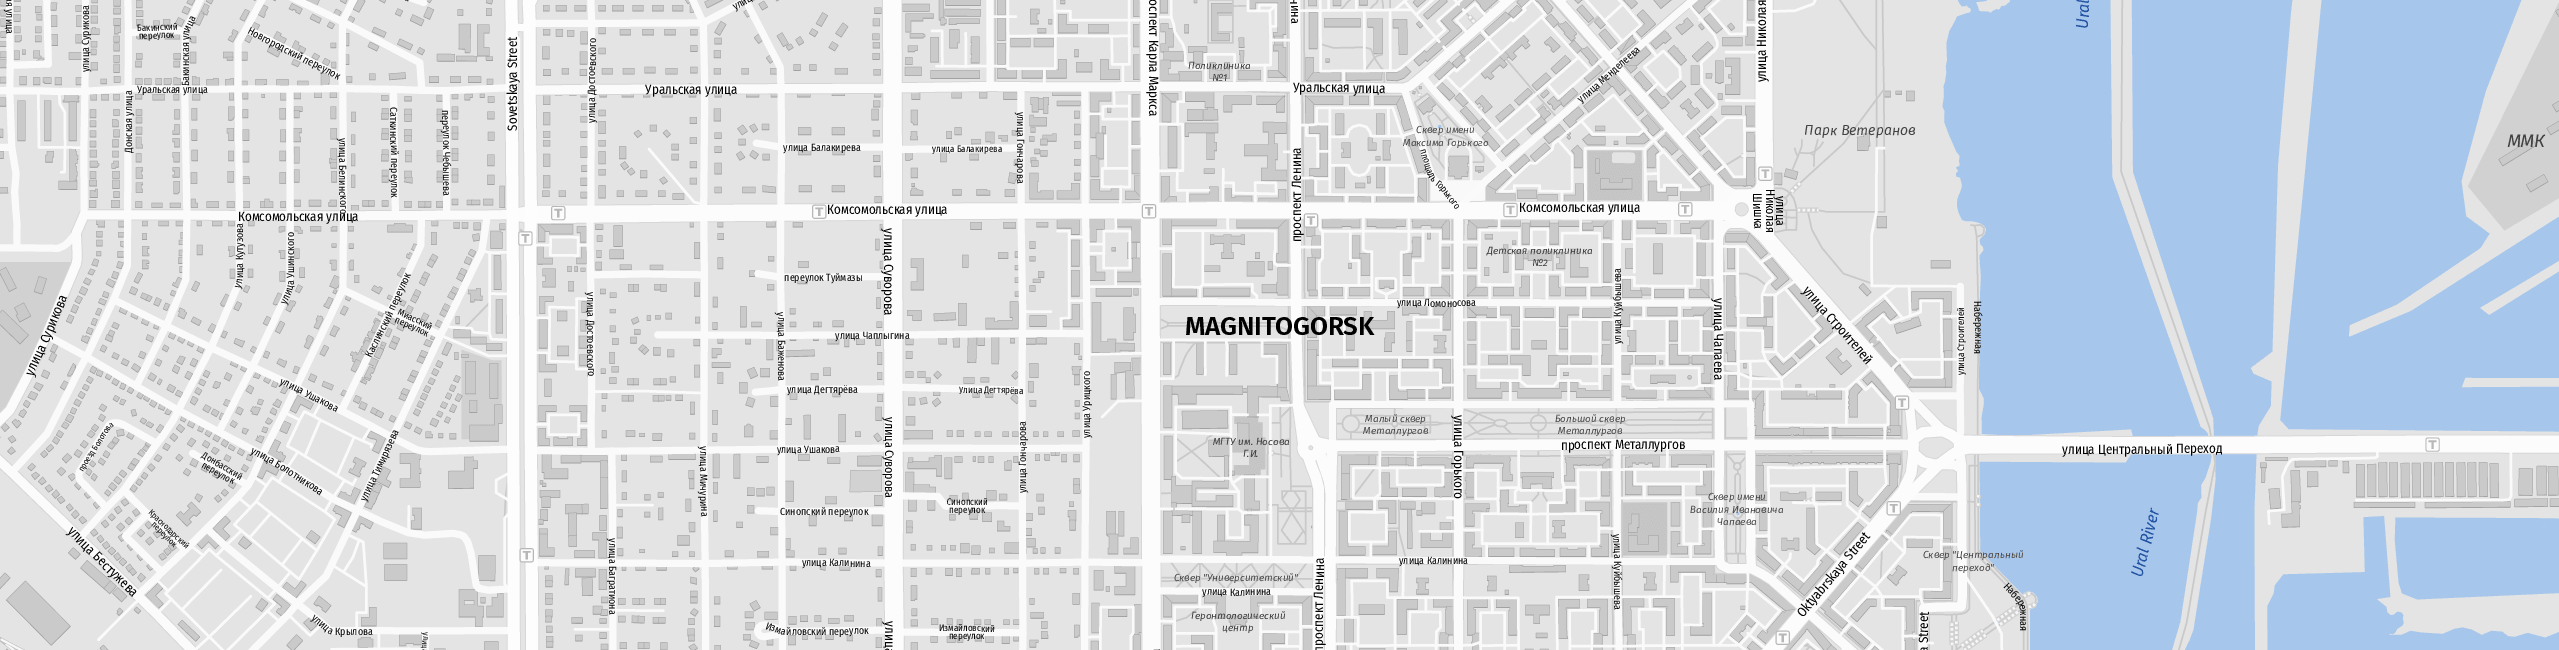 Stadtplan Magnitogorsk zum Downloaden.